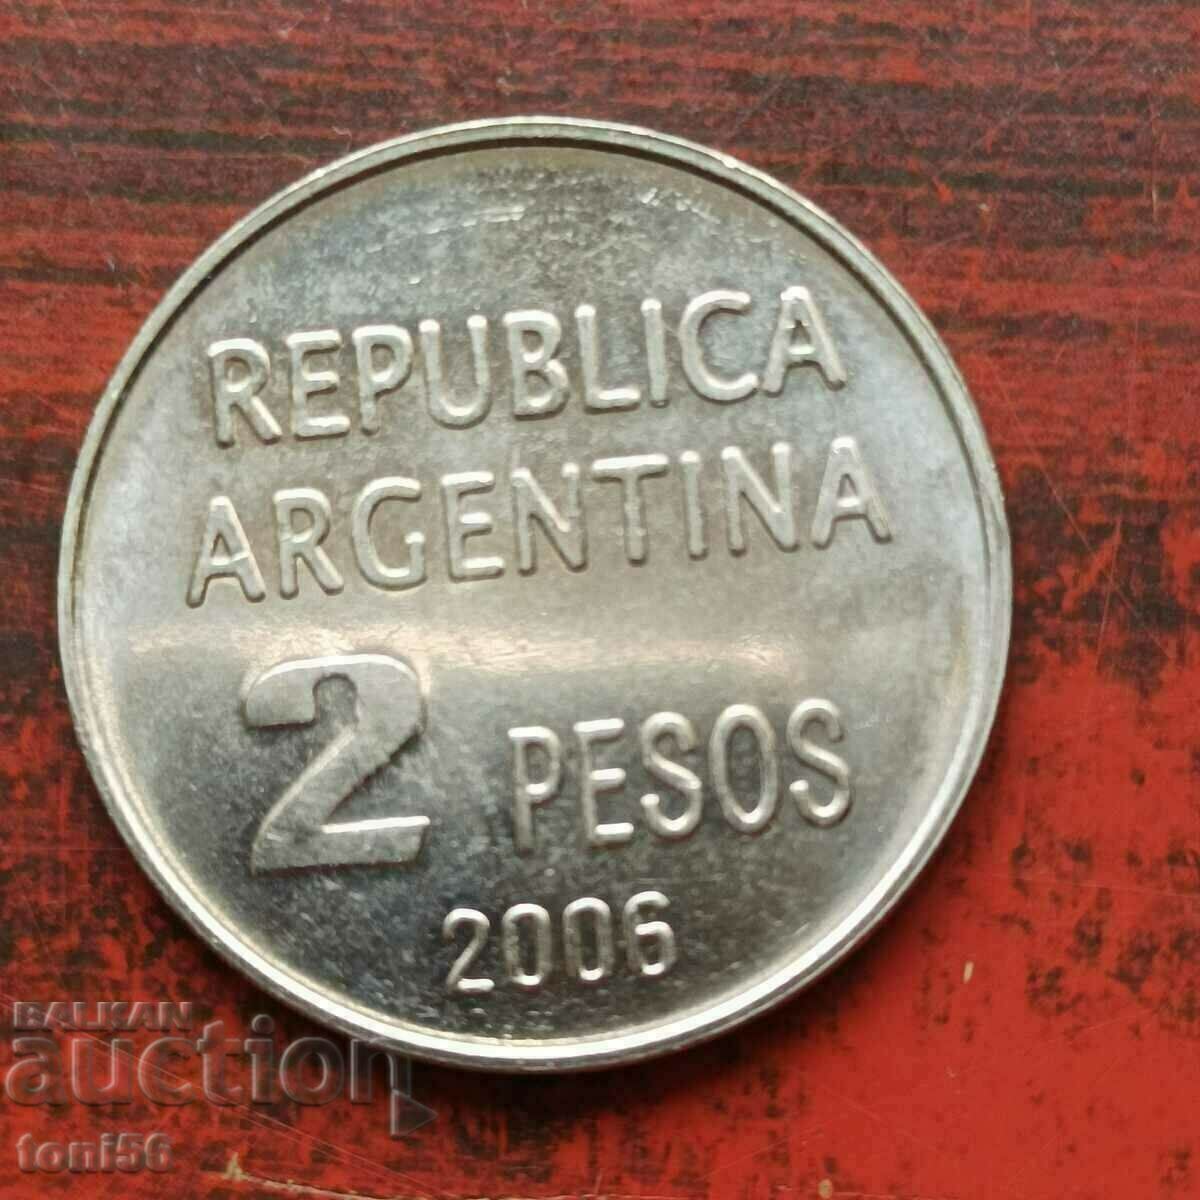 Аржентина 2 песос 2006  UNC юбилейна